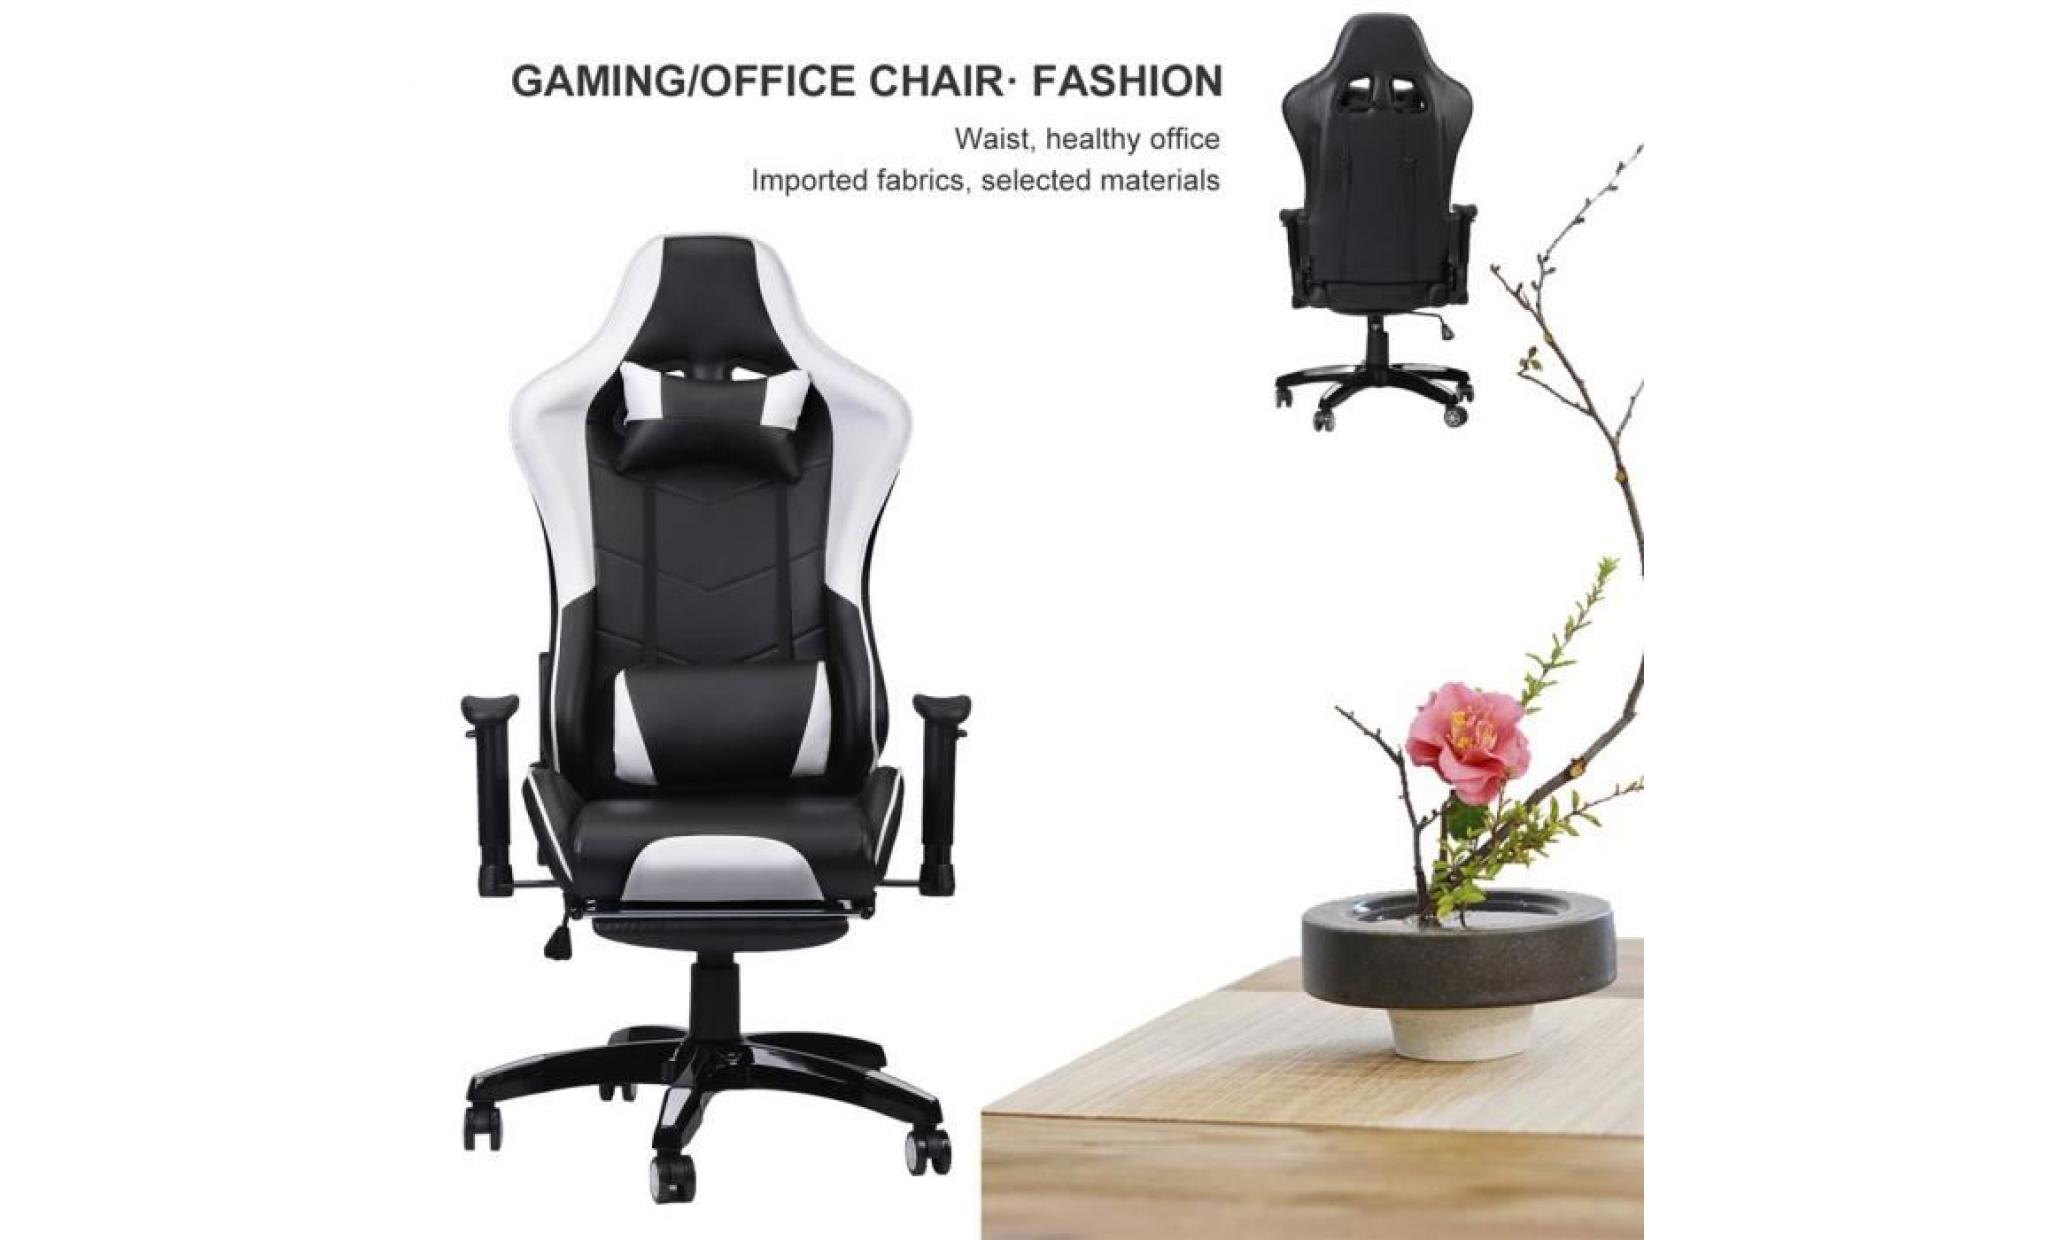 chaise de bureau   fauteuil de bureau anti fatigue avec repose pied banc et noir 135 degree pas cher